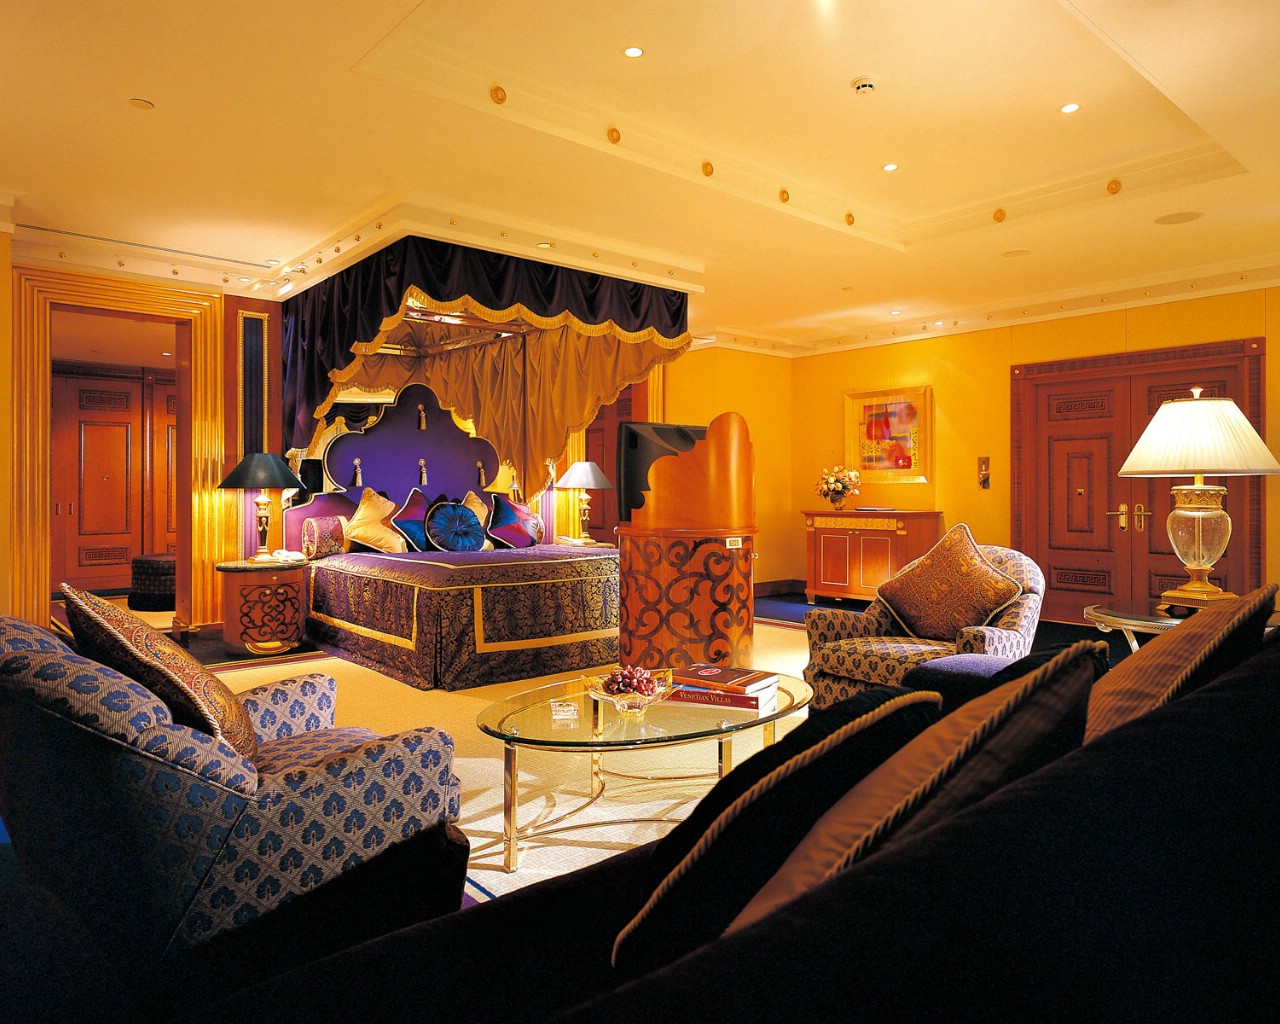 世界上最豪华七星级酒店迪拜塔高清晰壁纸